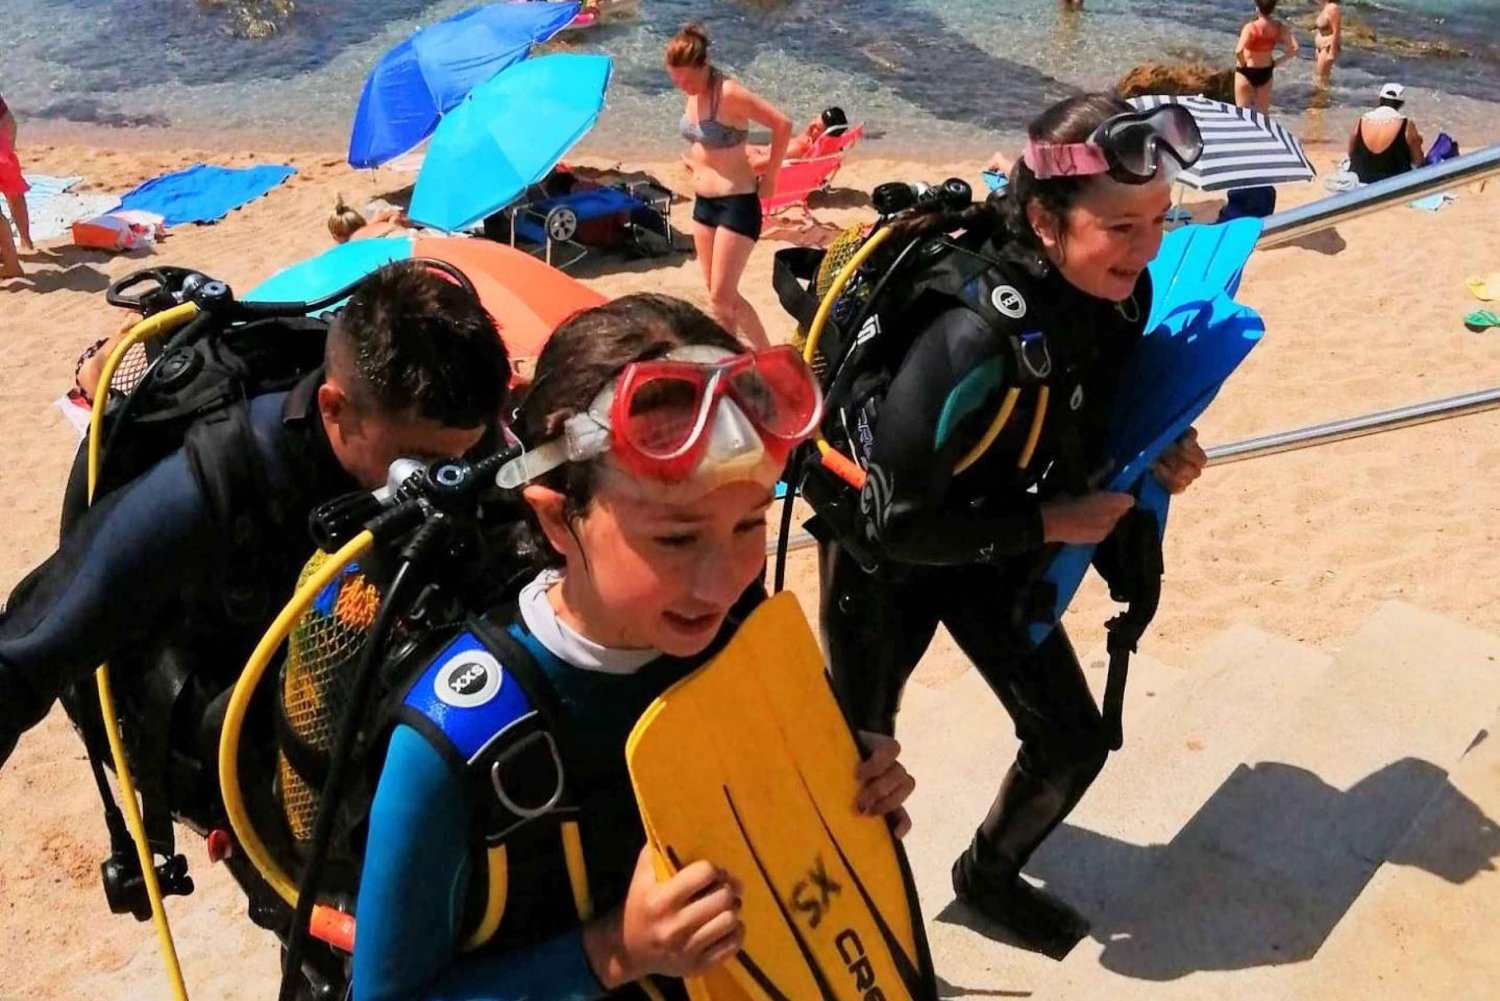 Lloret de Mar: Scuba Diving Experience no License Required